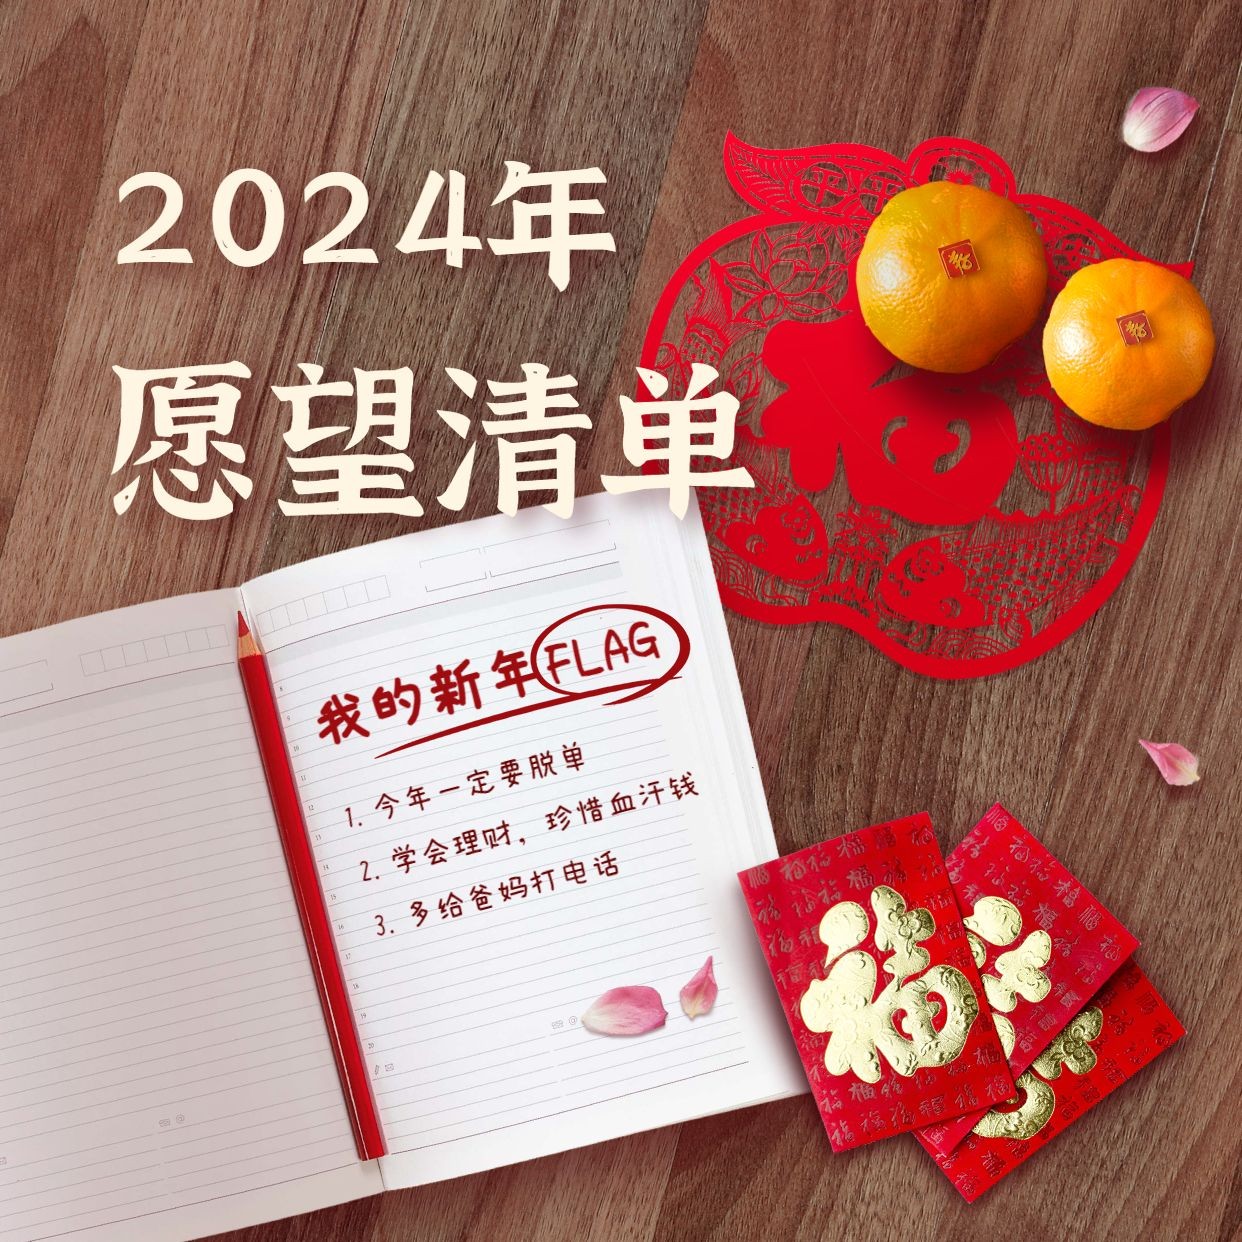 春节新年愿望清单实景海报预览效果